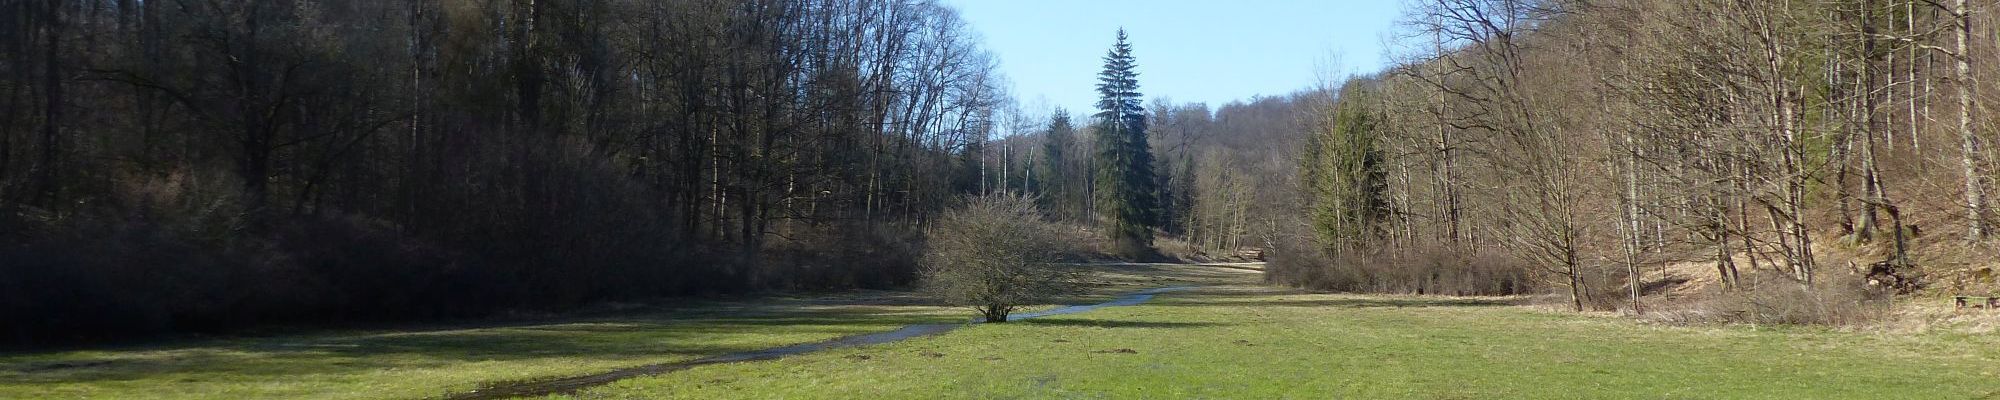 Oberes Helbetal - die Wiese am Waldhaus ist jedes Jahr überflutet